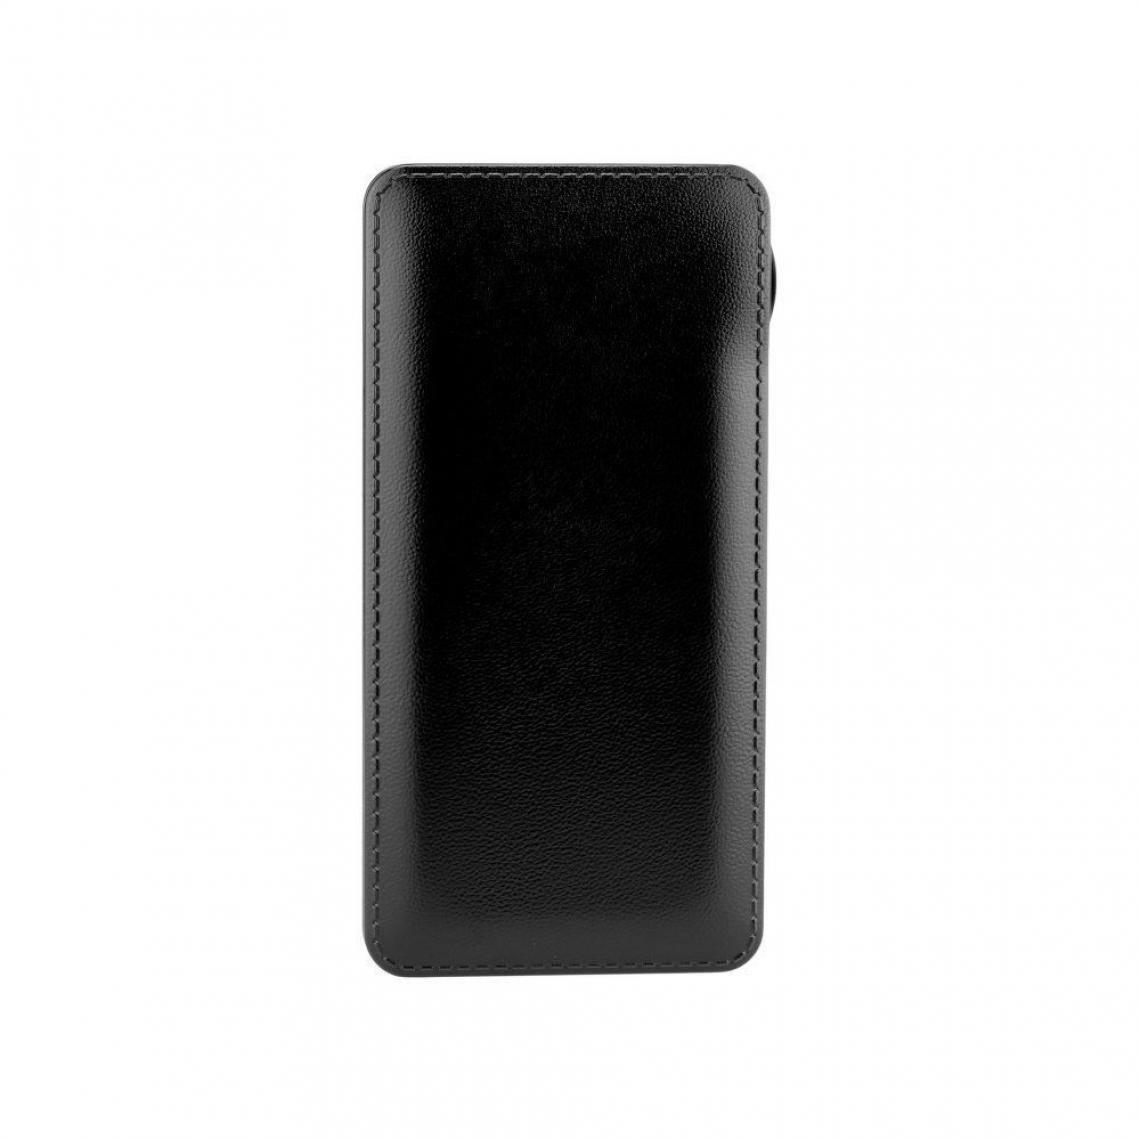 Ozzzo - Chargeur batterie externe 20000 mAh powerbank ozzzo noir pour Xiaomi Redmi 4A - Autres accessoires smartphone